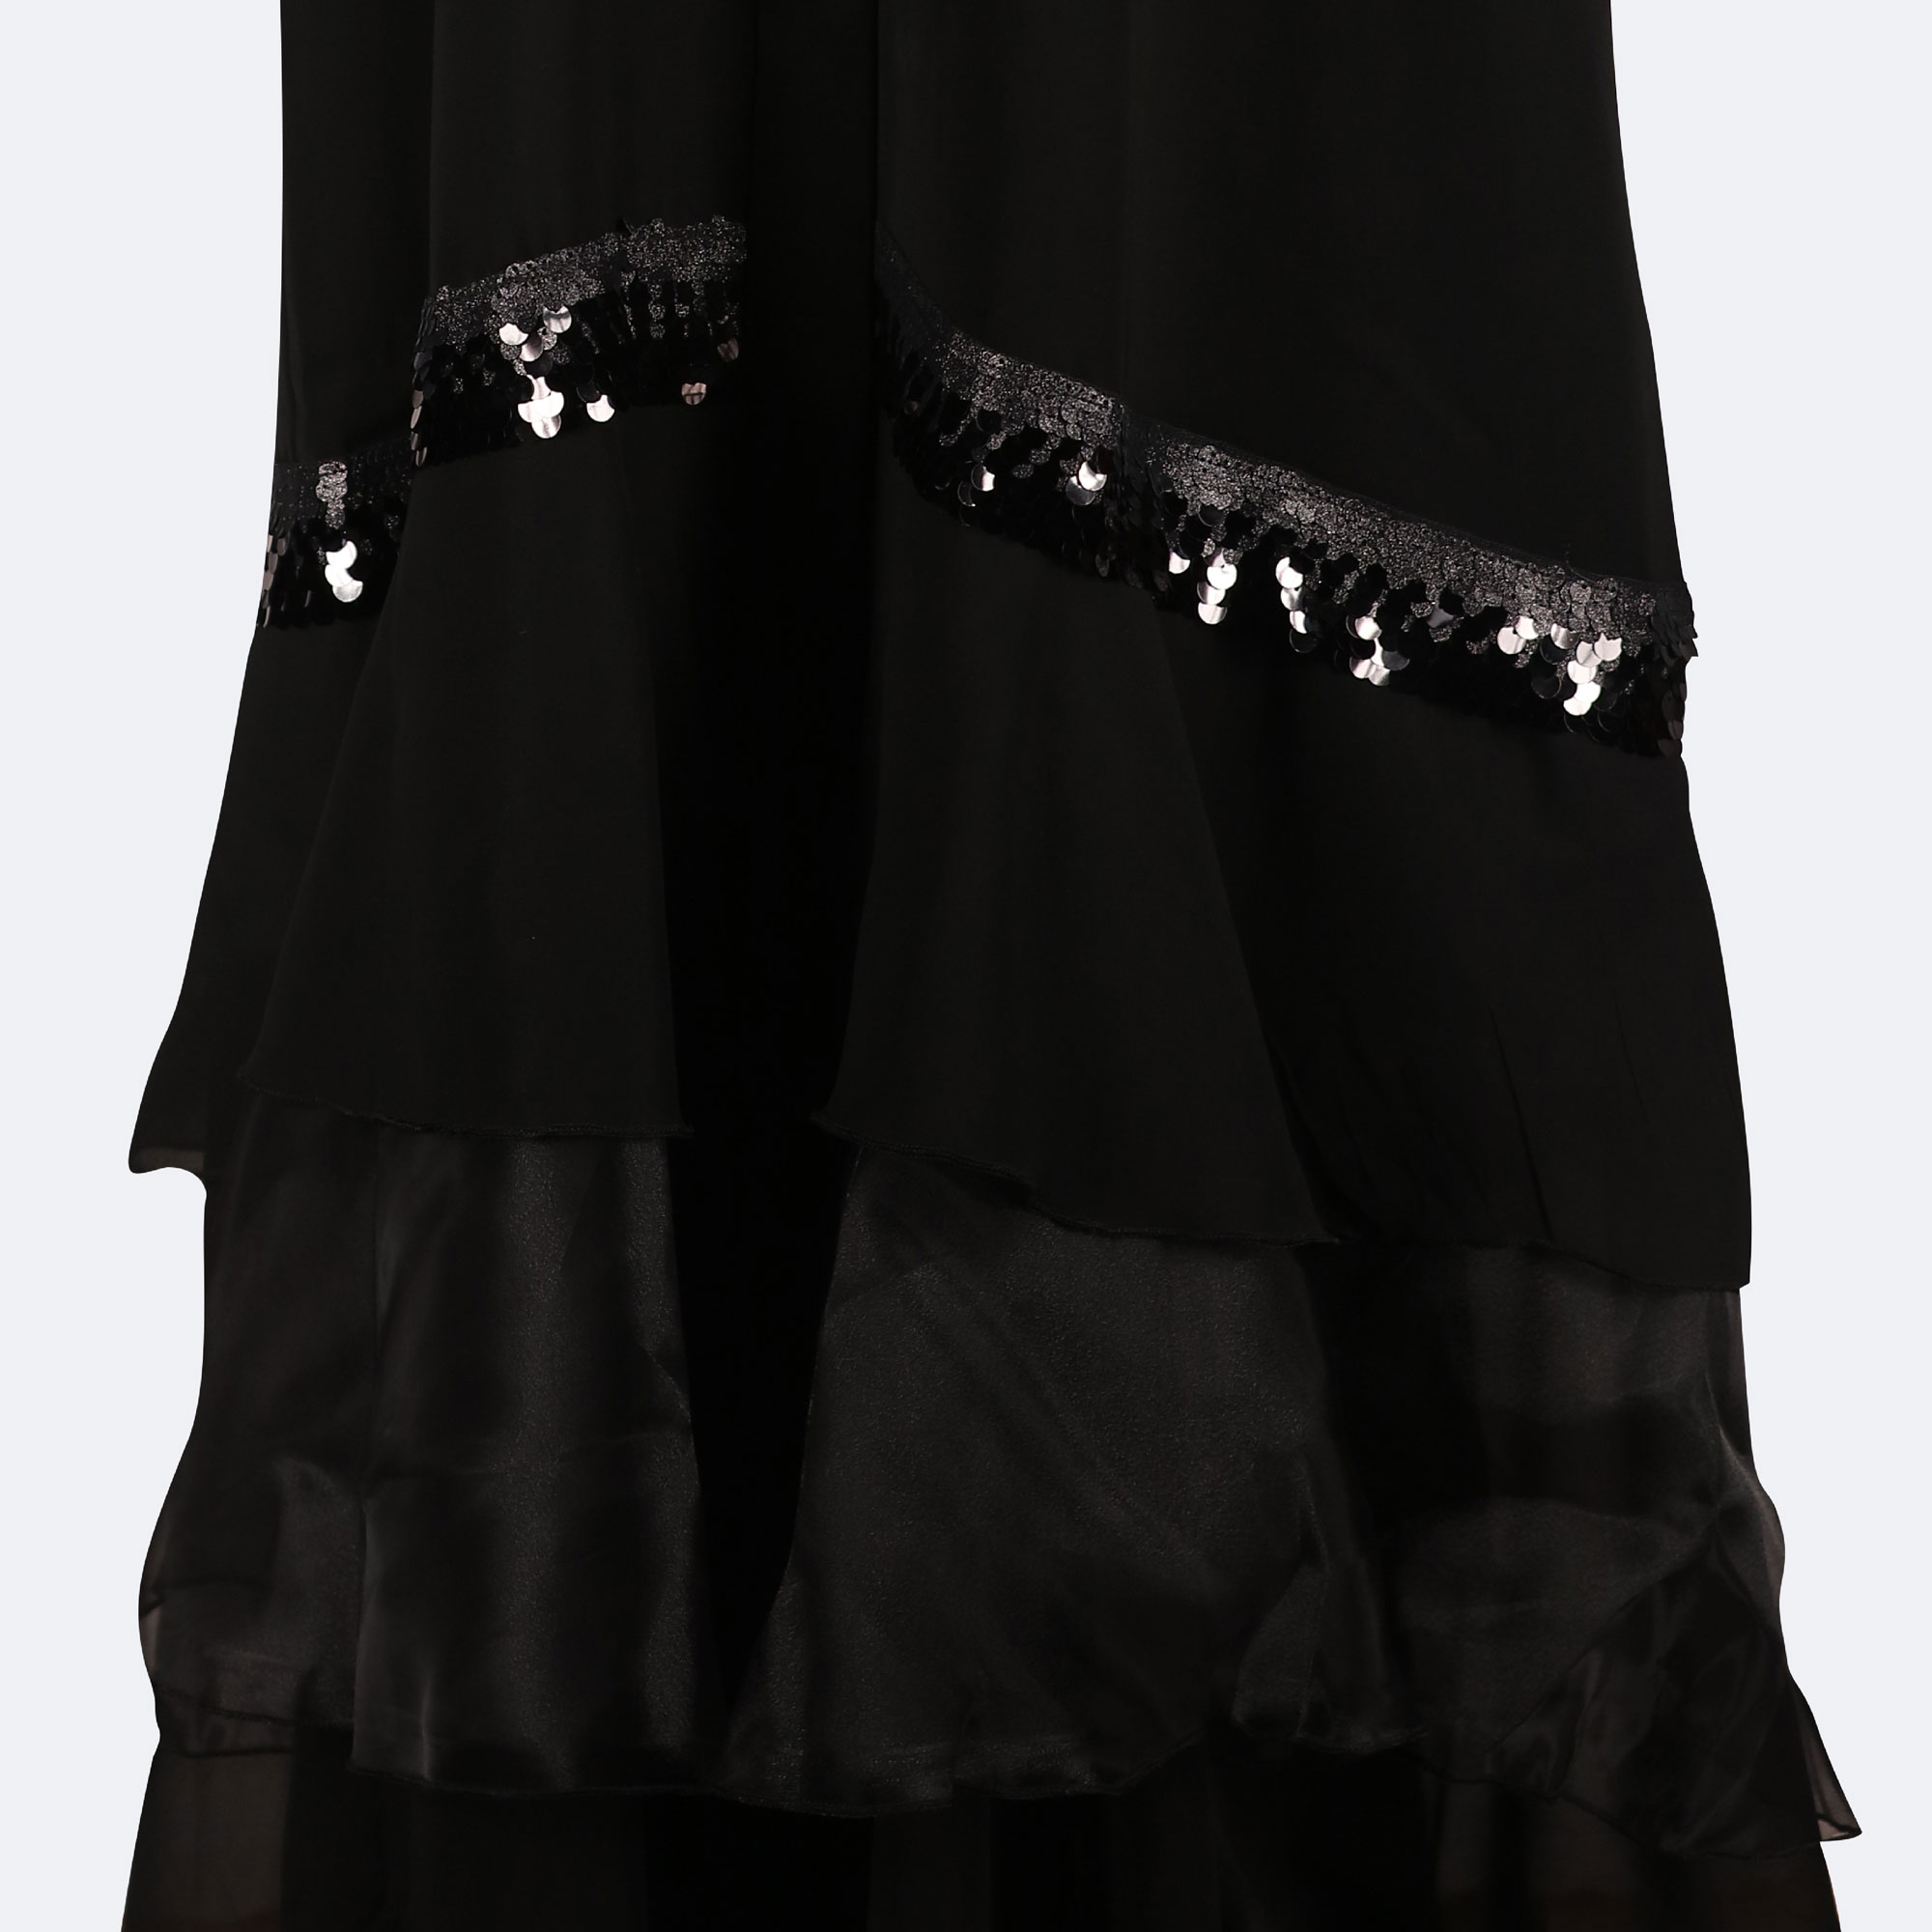 Stylish Black Abaya